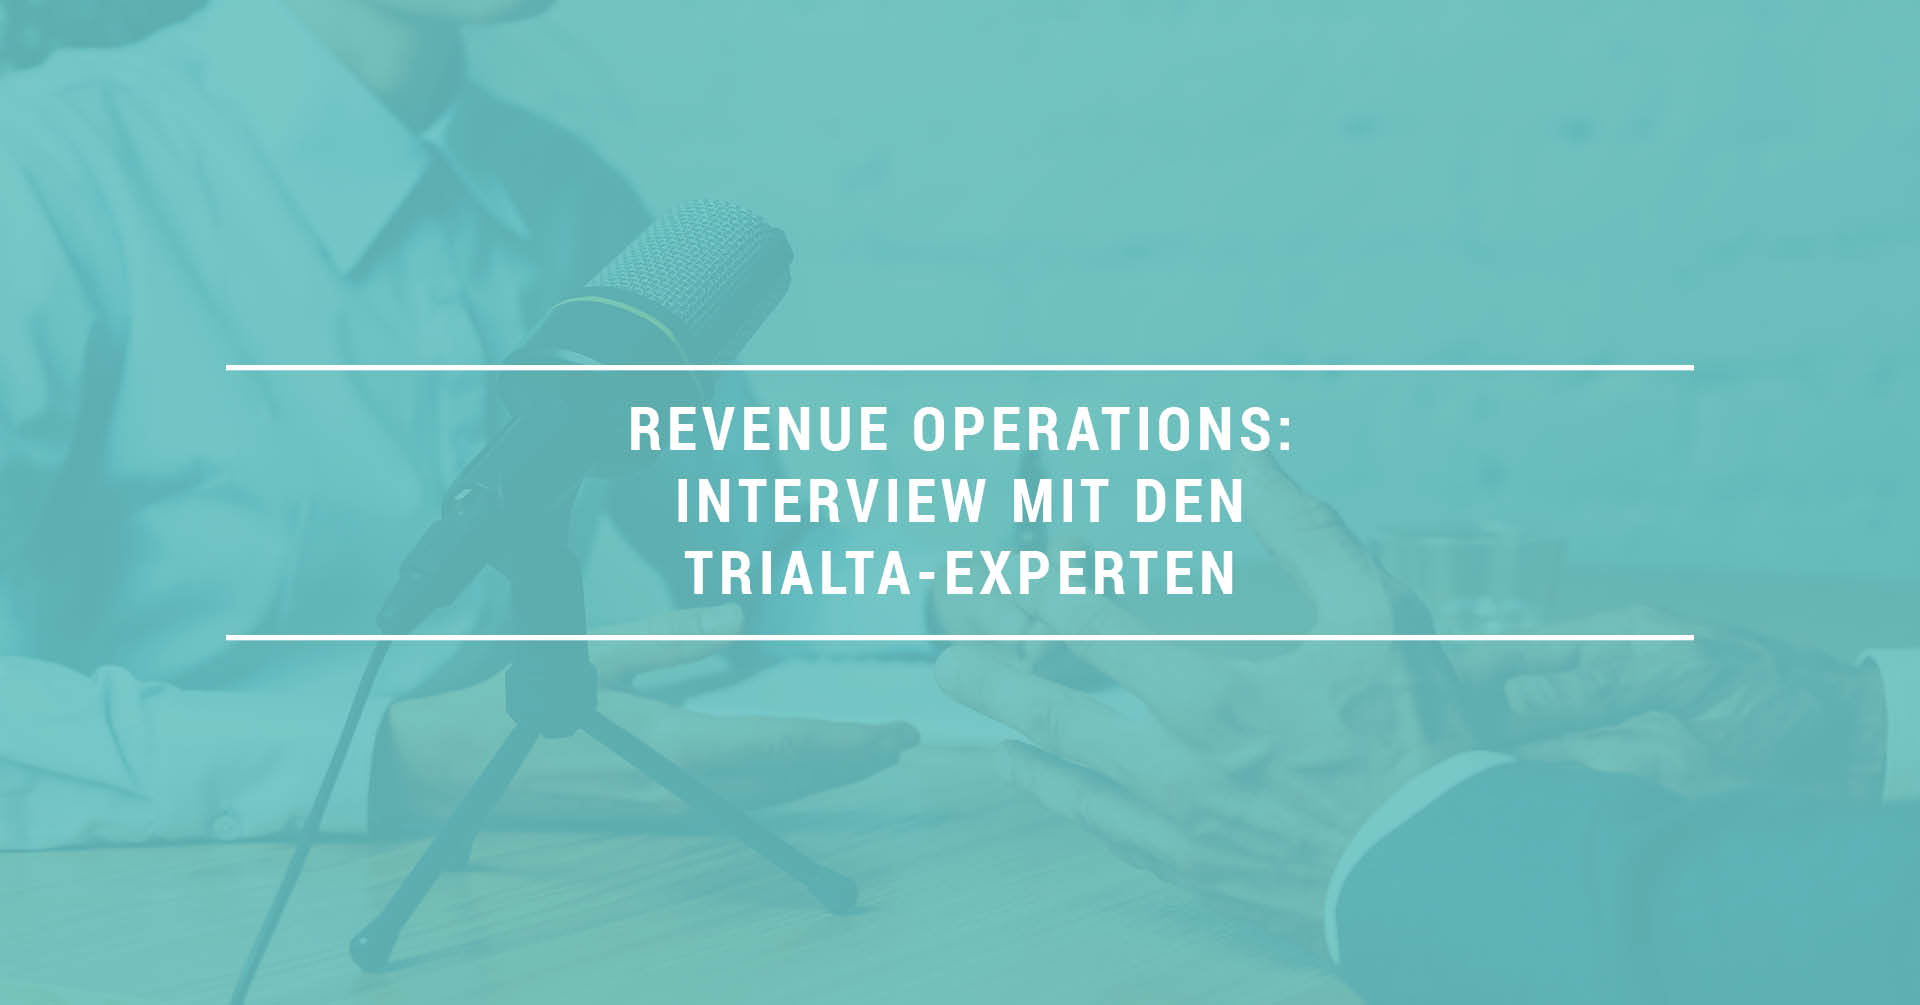 Revenue Operations - Interview mit den TRIALTA-Experten